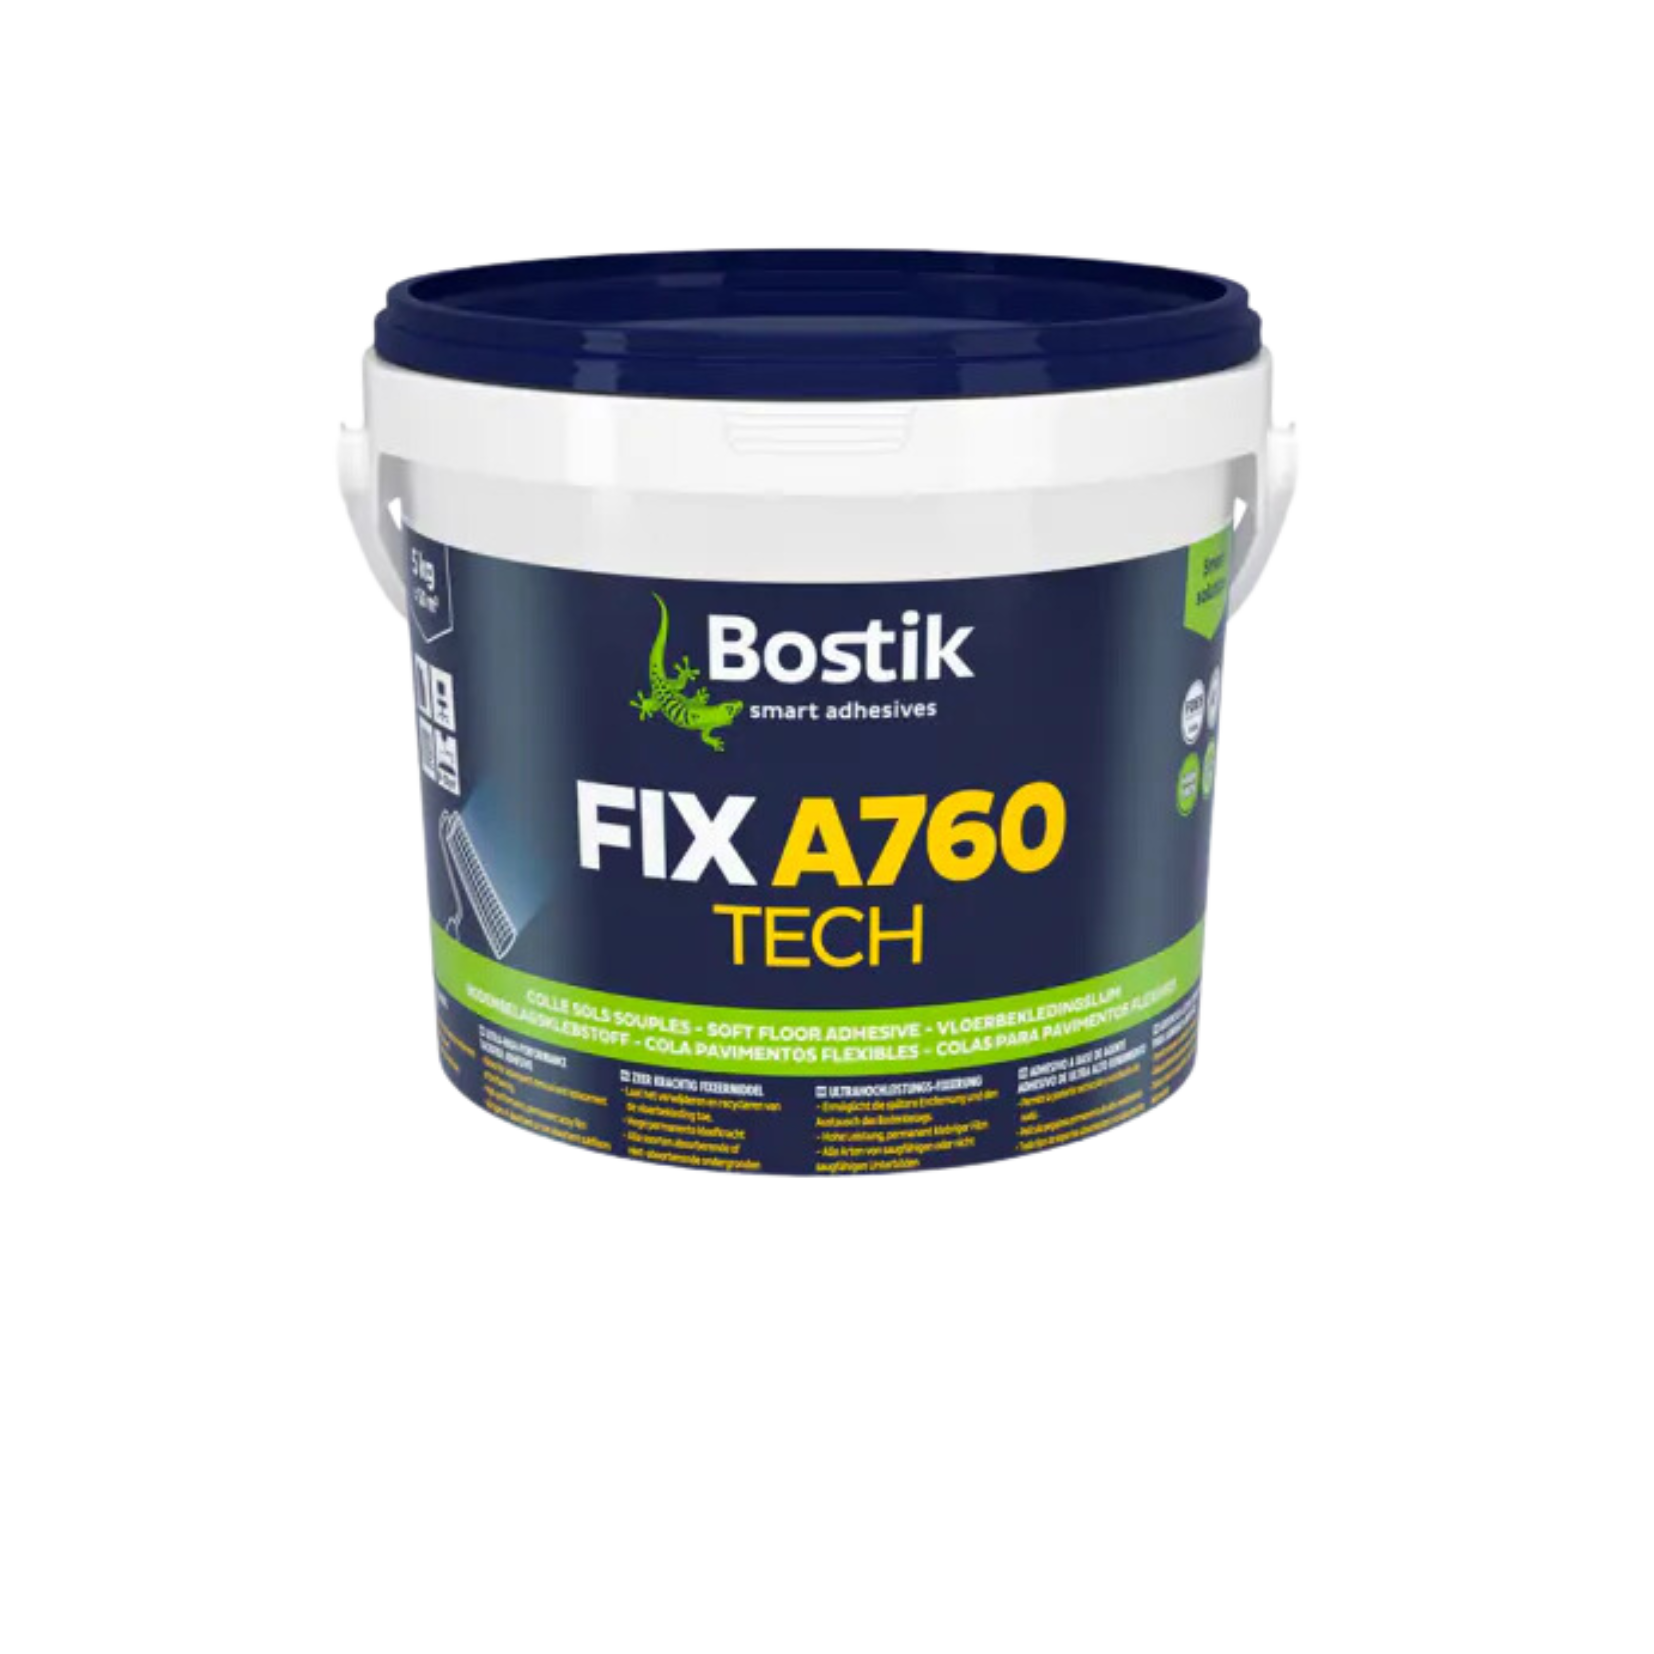 Bostik Fix A760 Tech-image